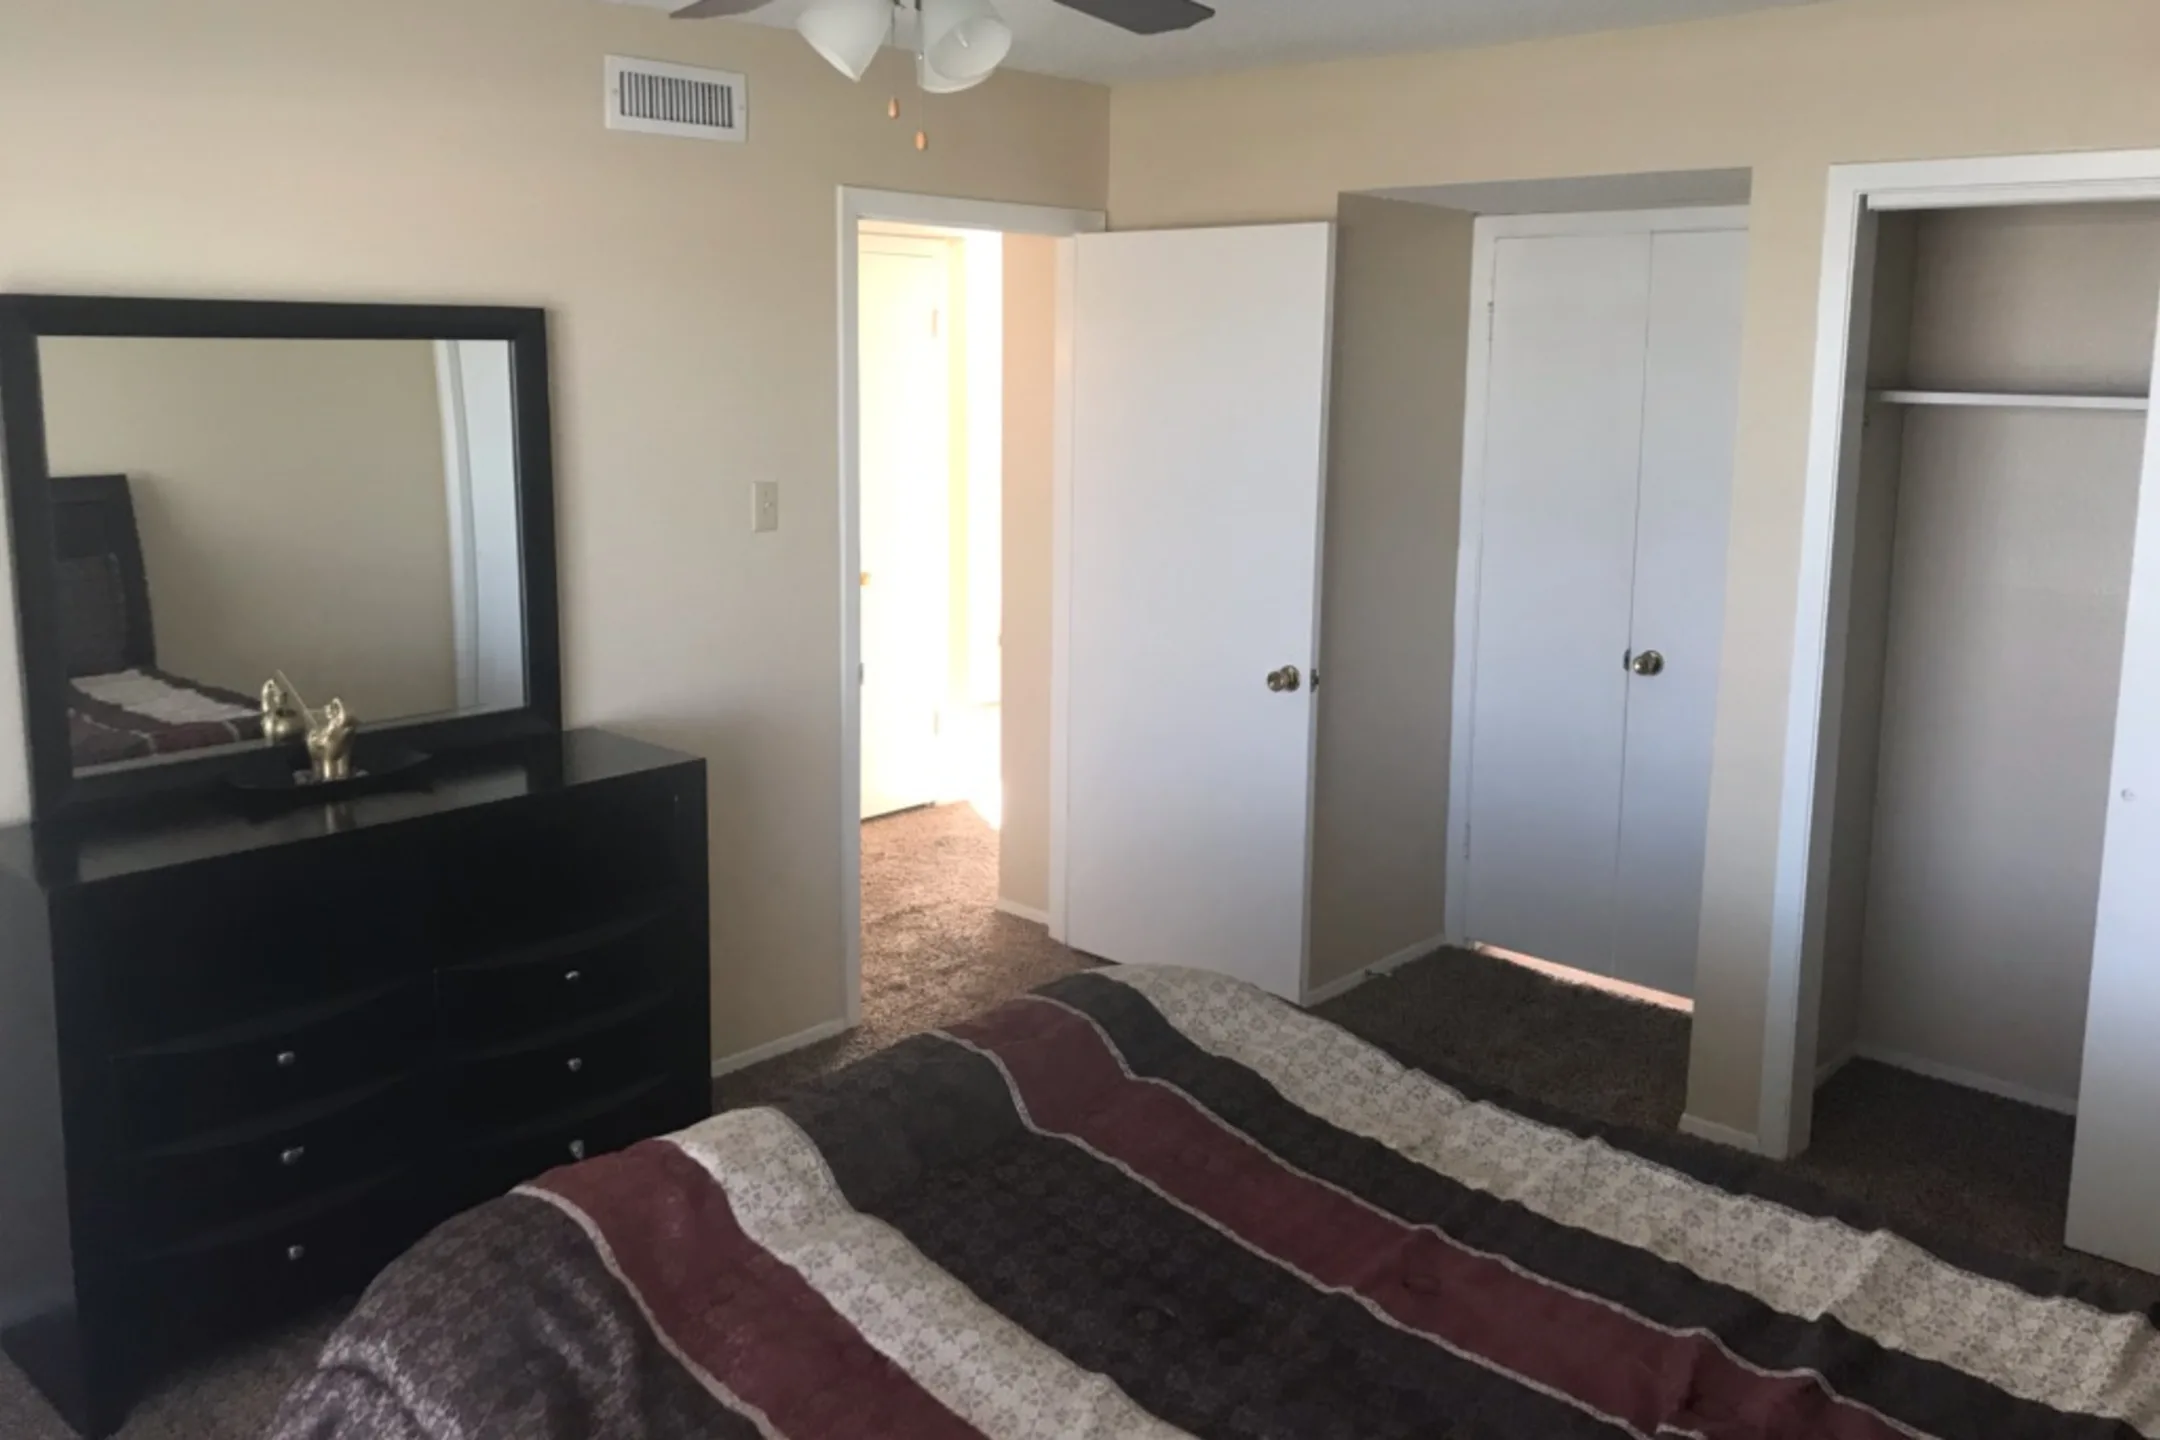 Bedroom - Celina Plaza - El Paso, TX